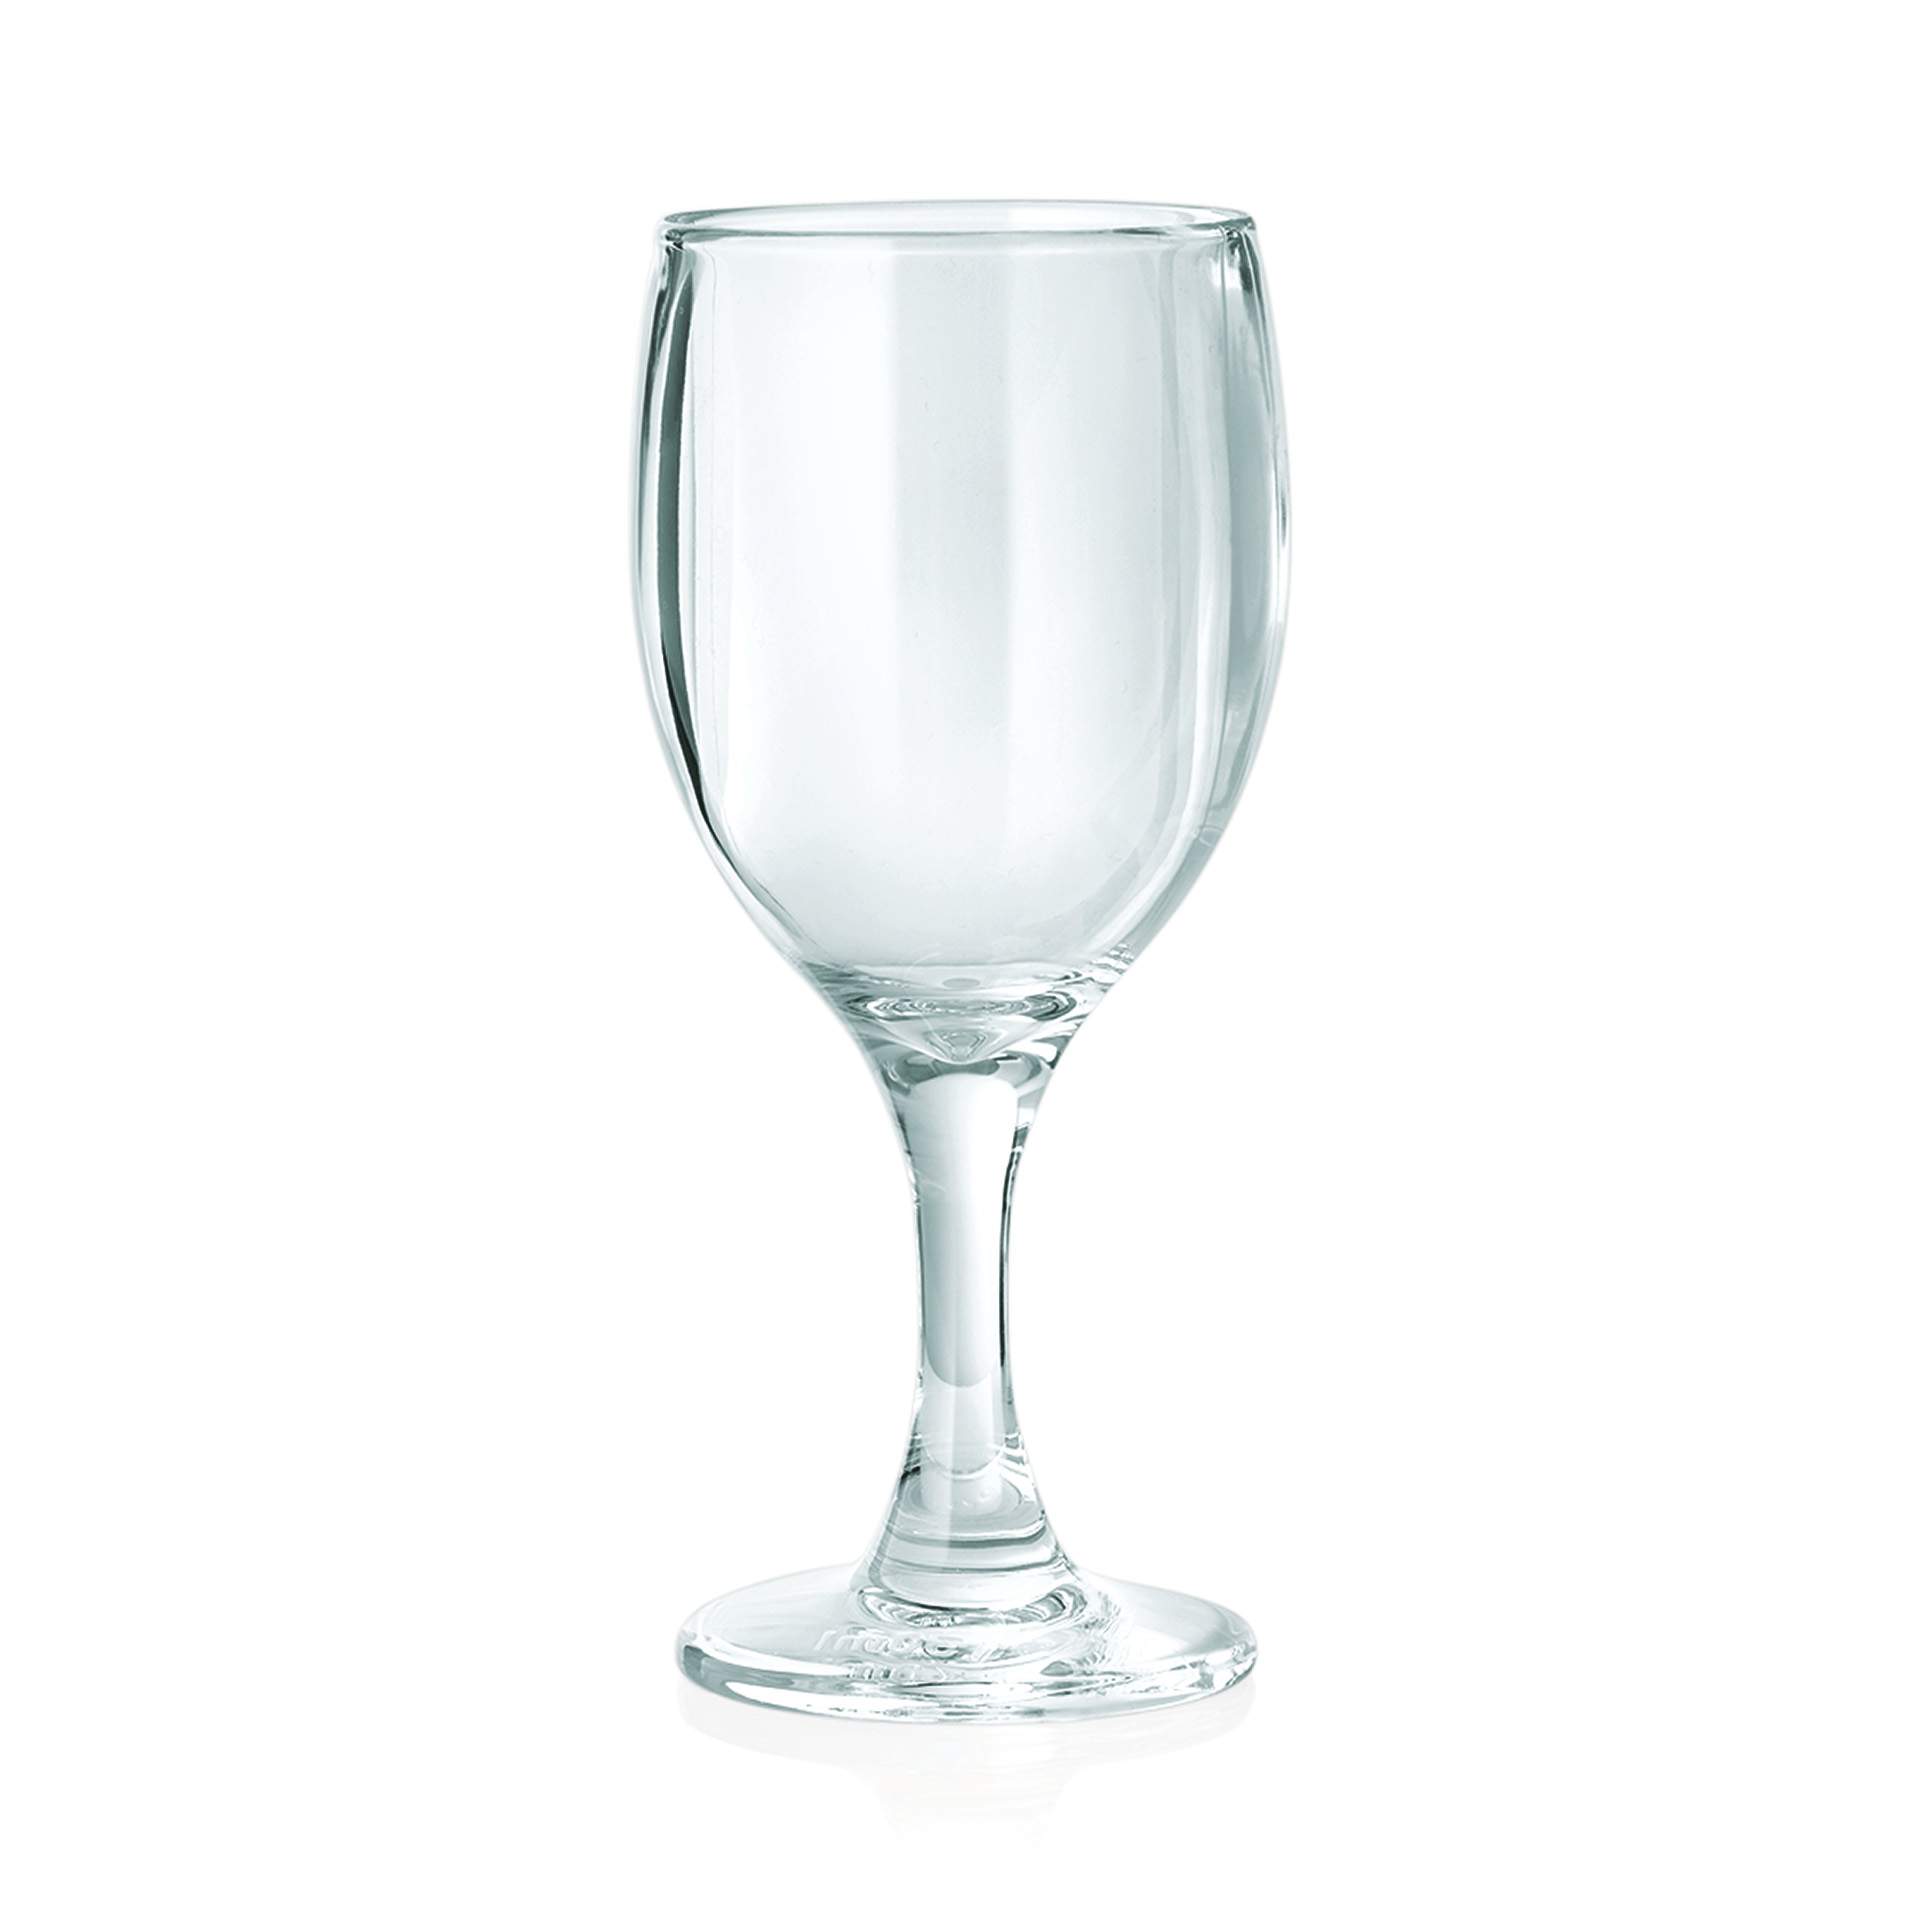 Wasserglas - Serie Sunset - Abm. 14,0 cm - Ø oben / unten 6,4 / 5,7 cm - Inhalt 0,14 l - Polycarbonat - 9455014-A